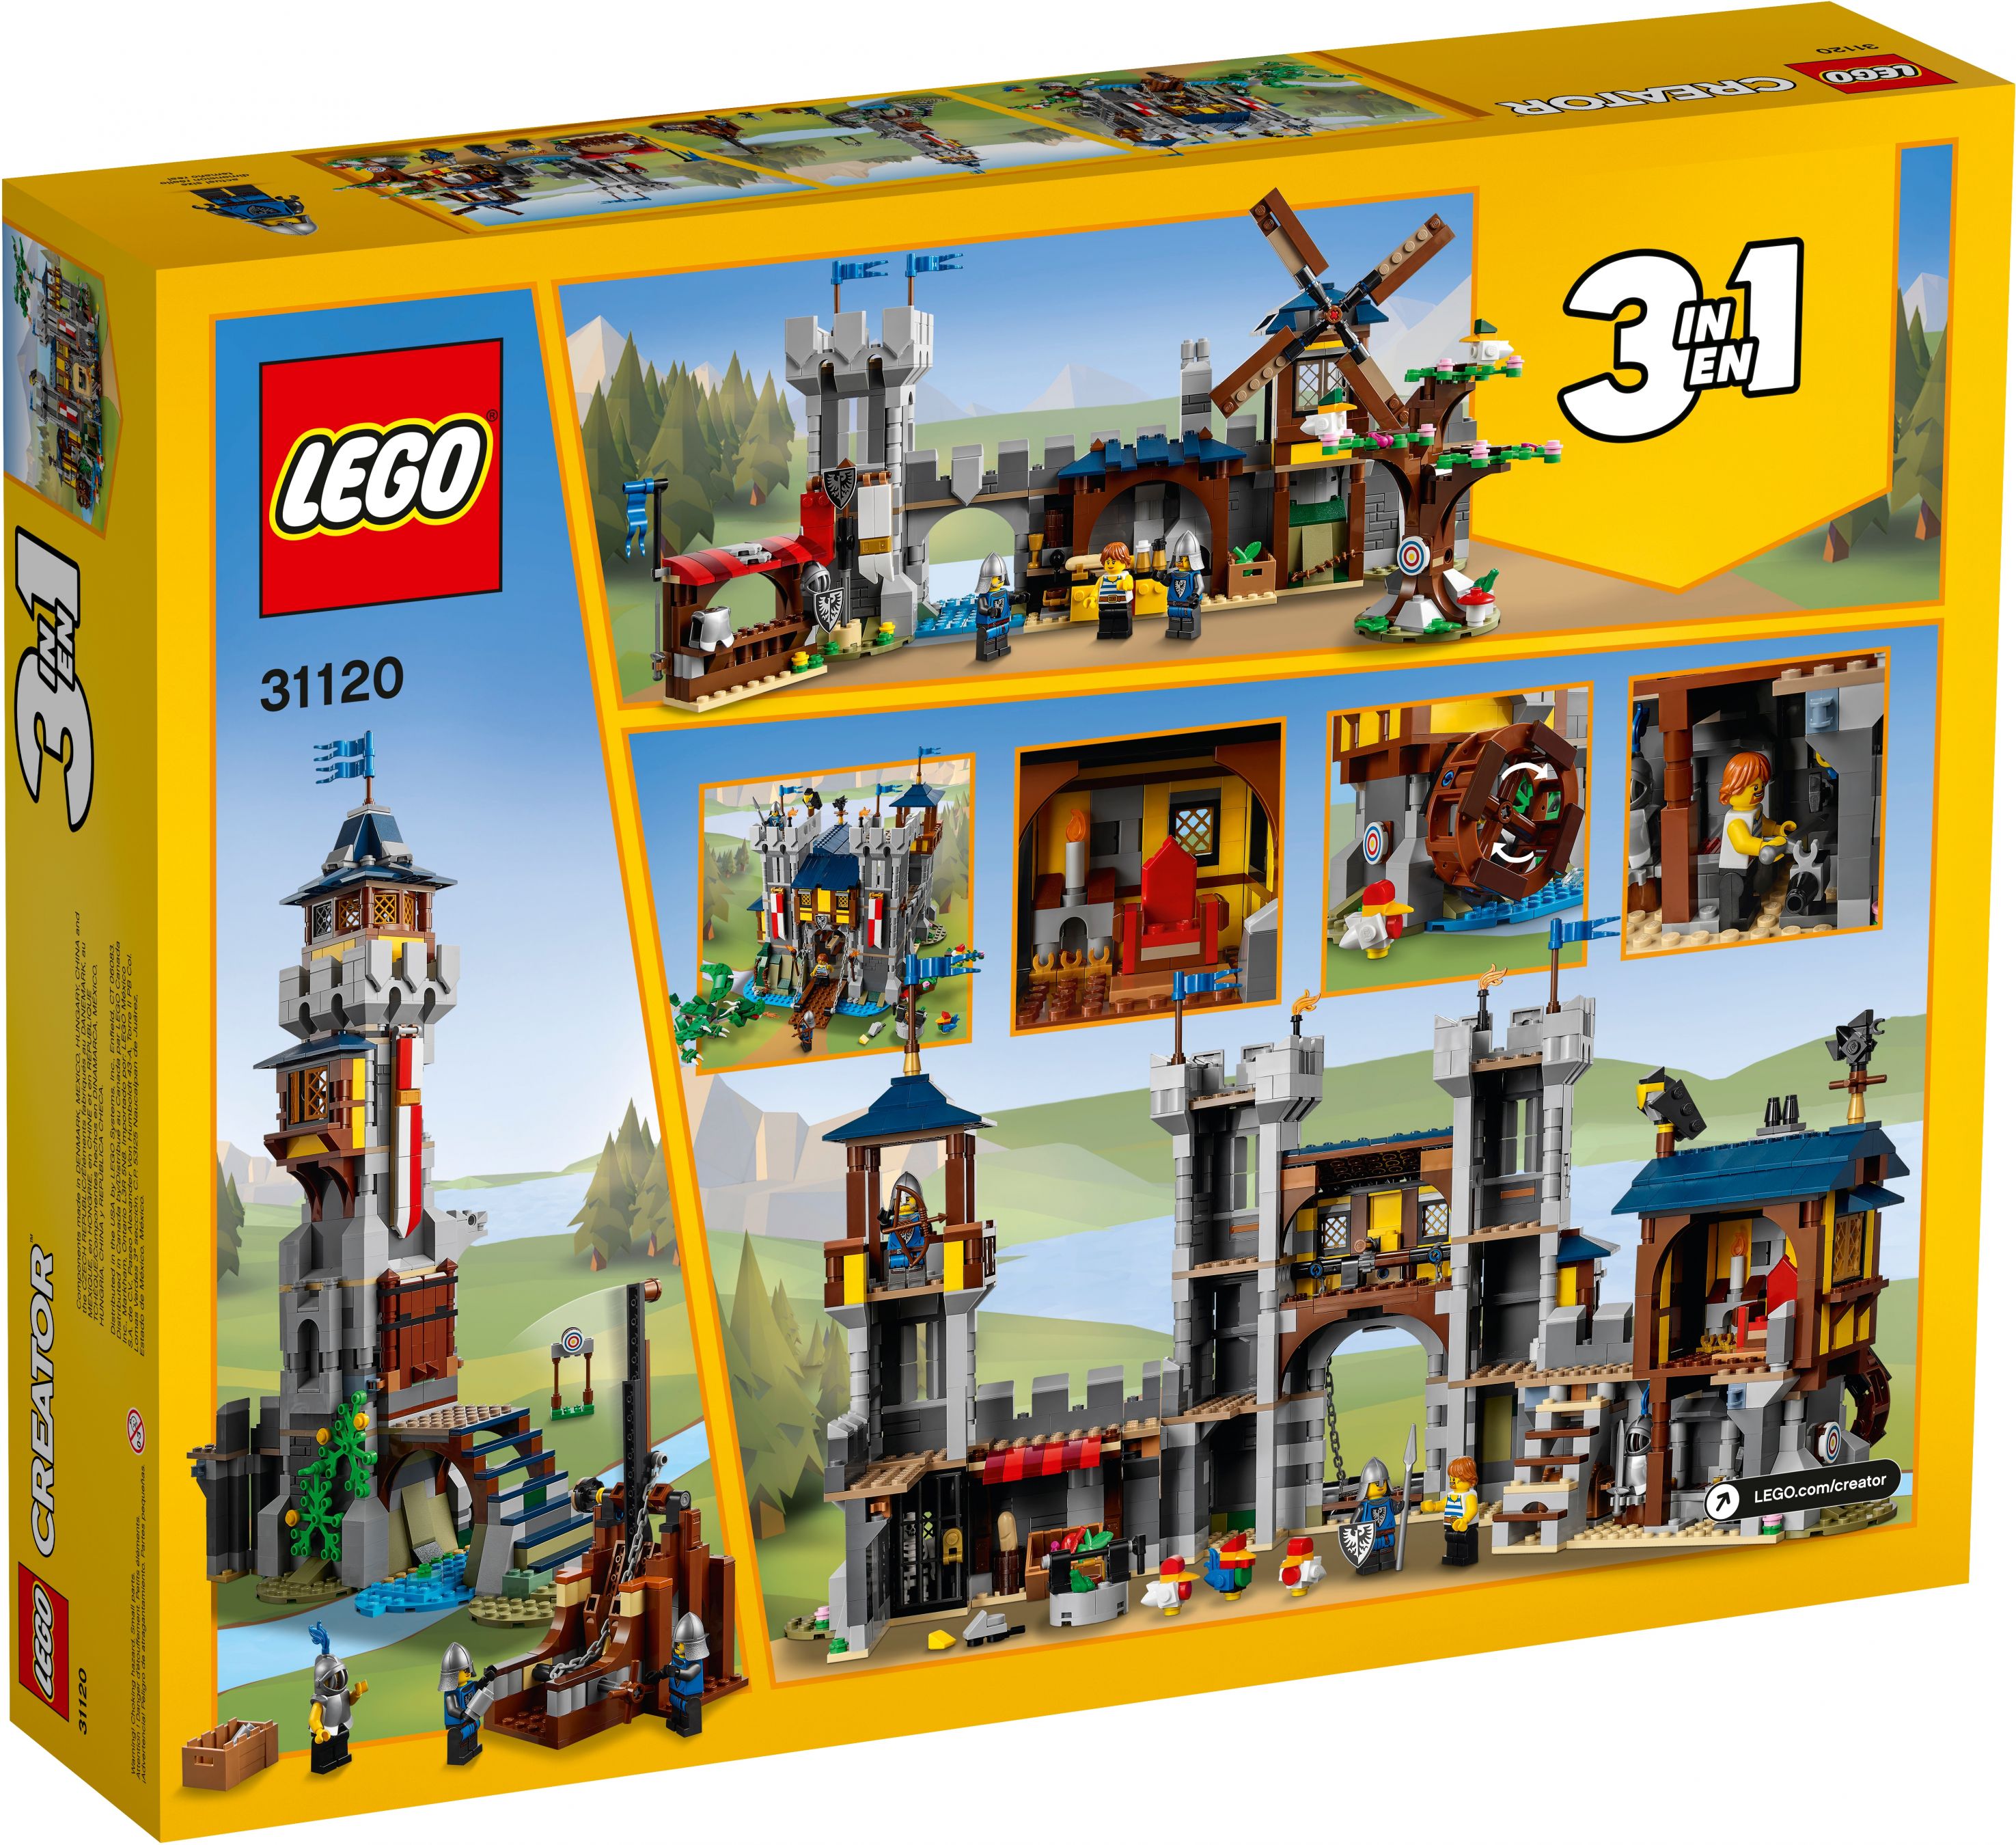 LEGO Creator 31120 Mittelalterliche Burg LEGO_31120_box5_v39.jpg